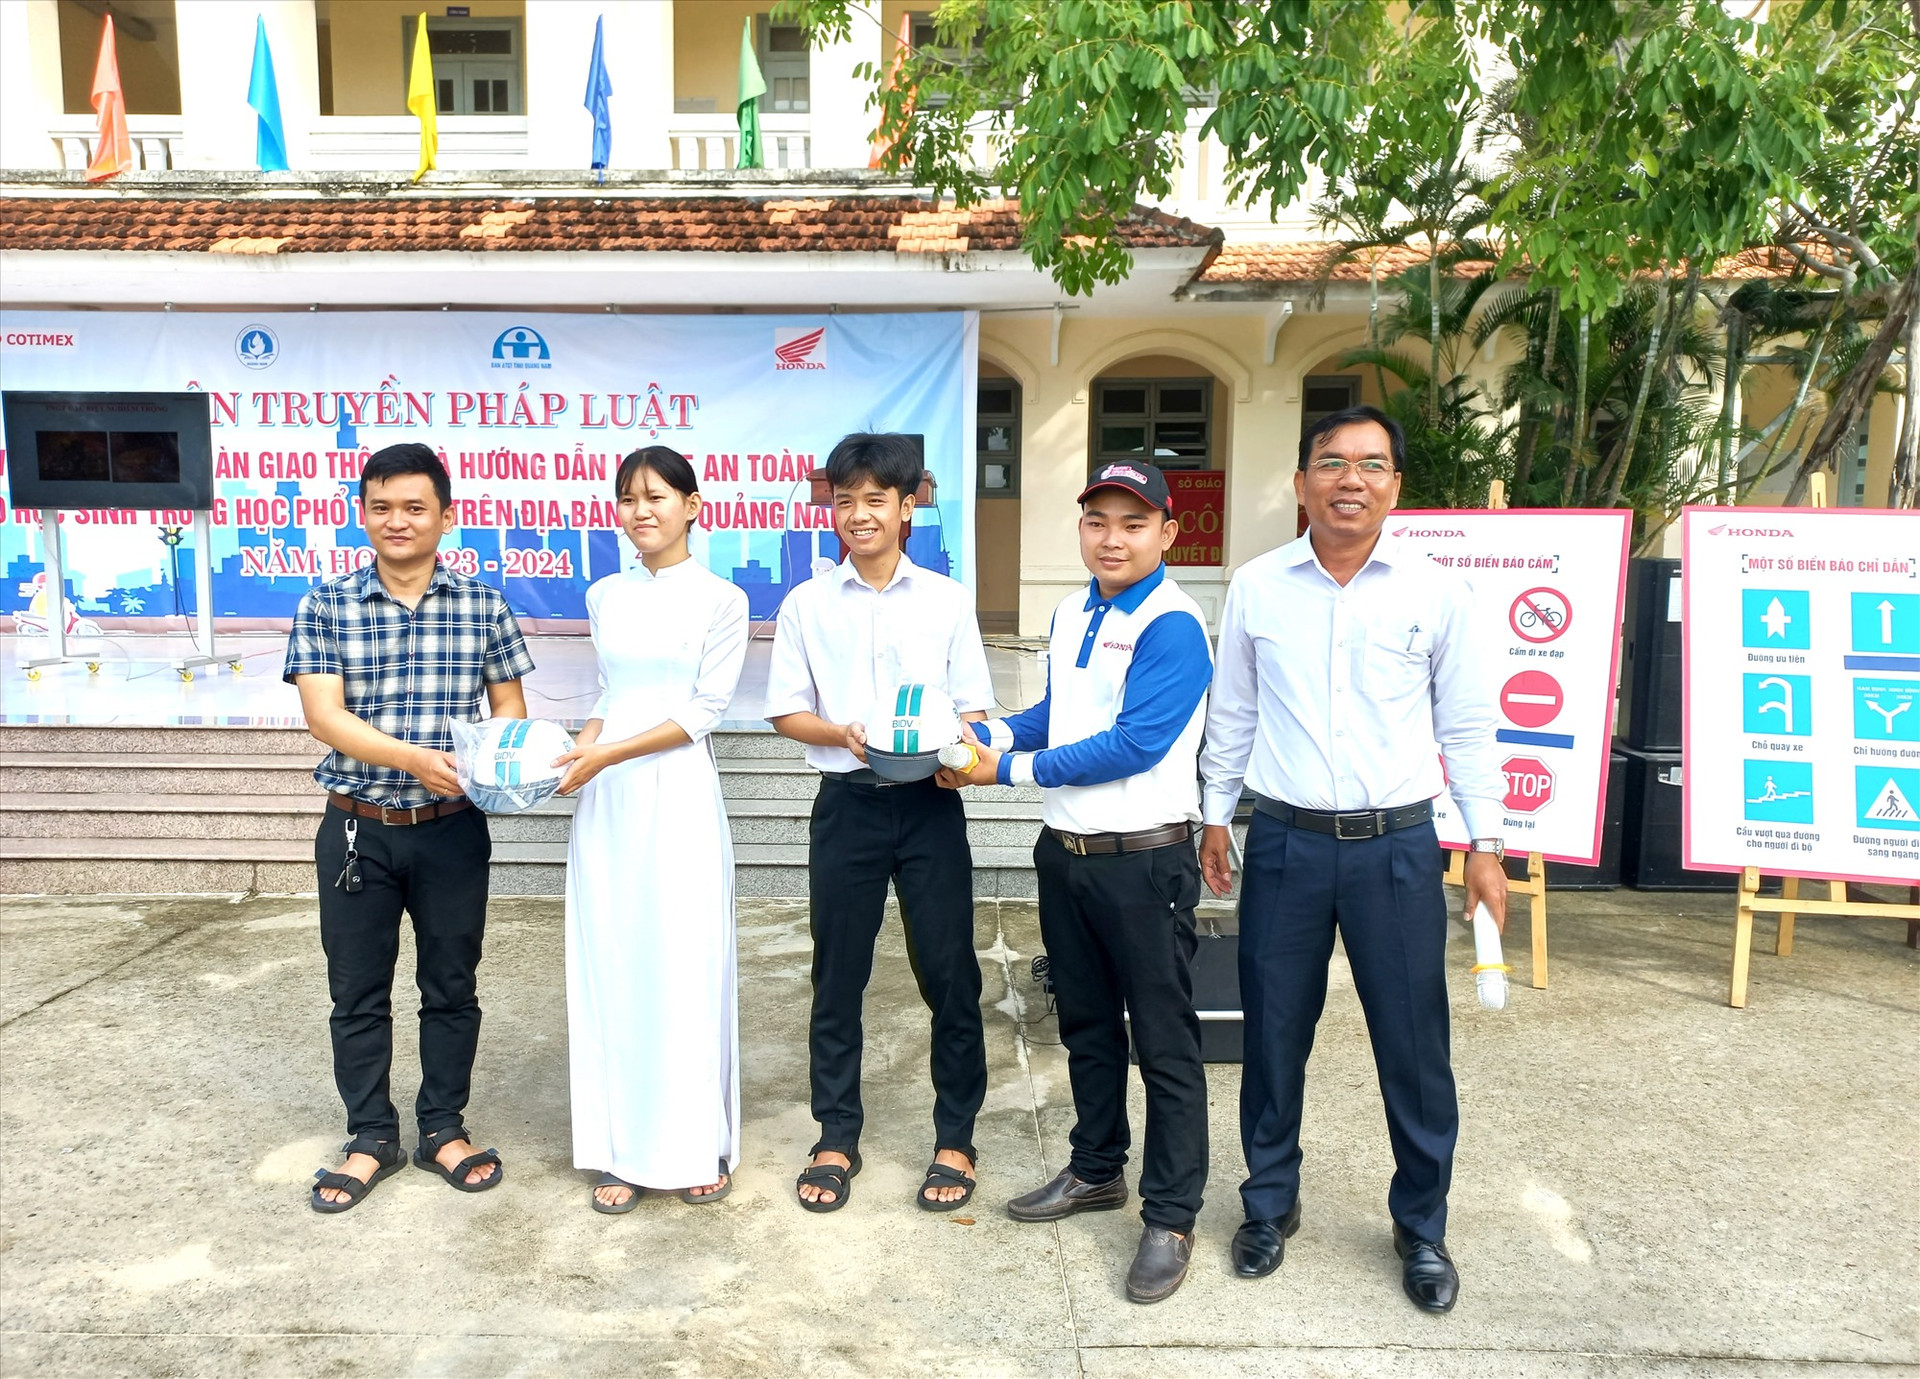 Văn phòng Ban An toàn giao thông tỉnh Quảng Nam phối hợp tuyên truyền pháp luật, tặng mũ bảo hiểm cho học sinh bậc THPT. Ảnh: C.T